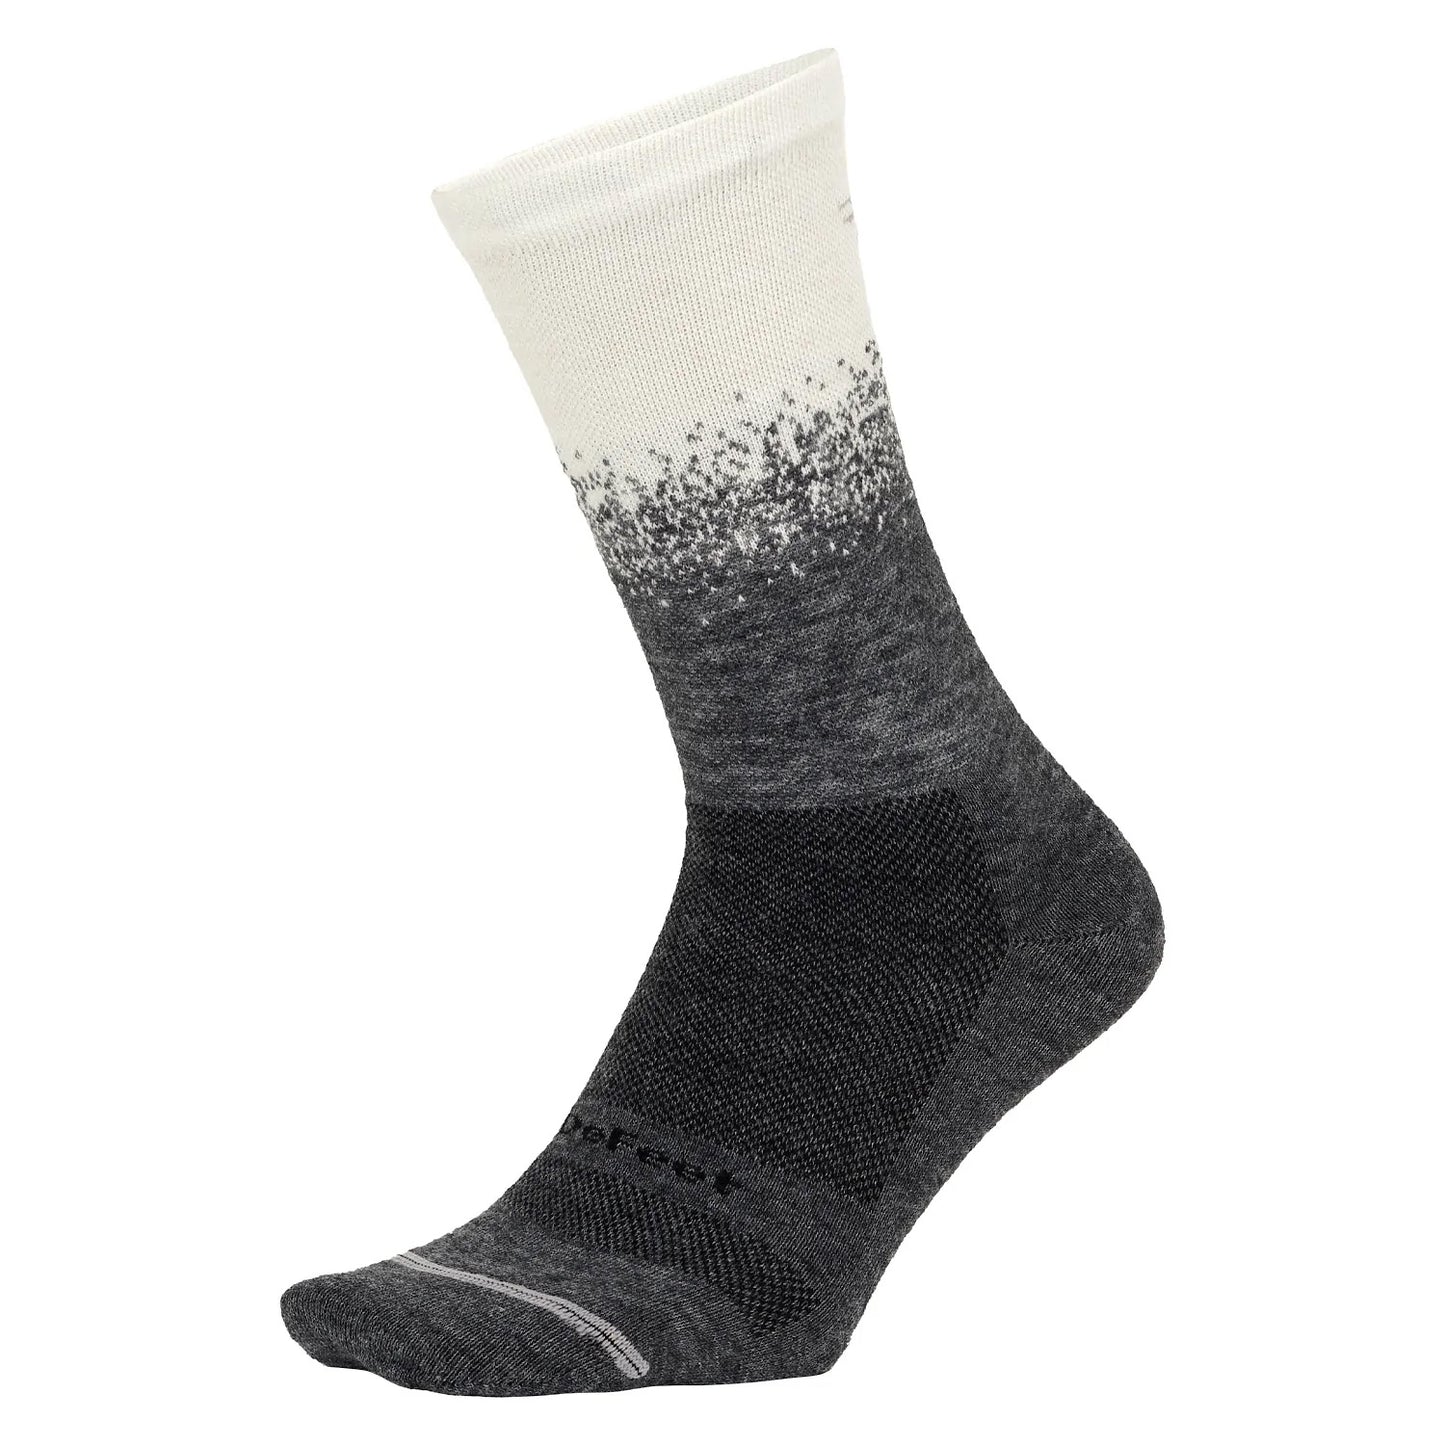 DeFeet Wooleator Pro 6" Gravel Gray Socks 9.5-11.5 Faze